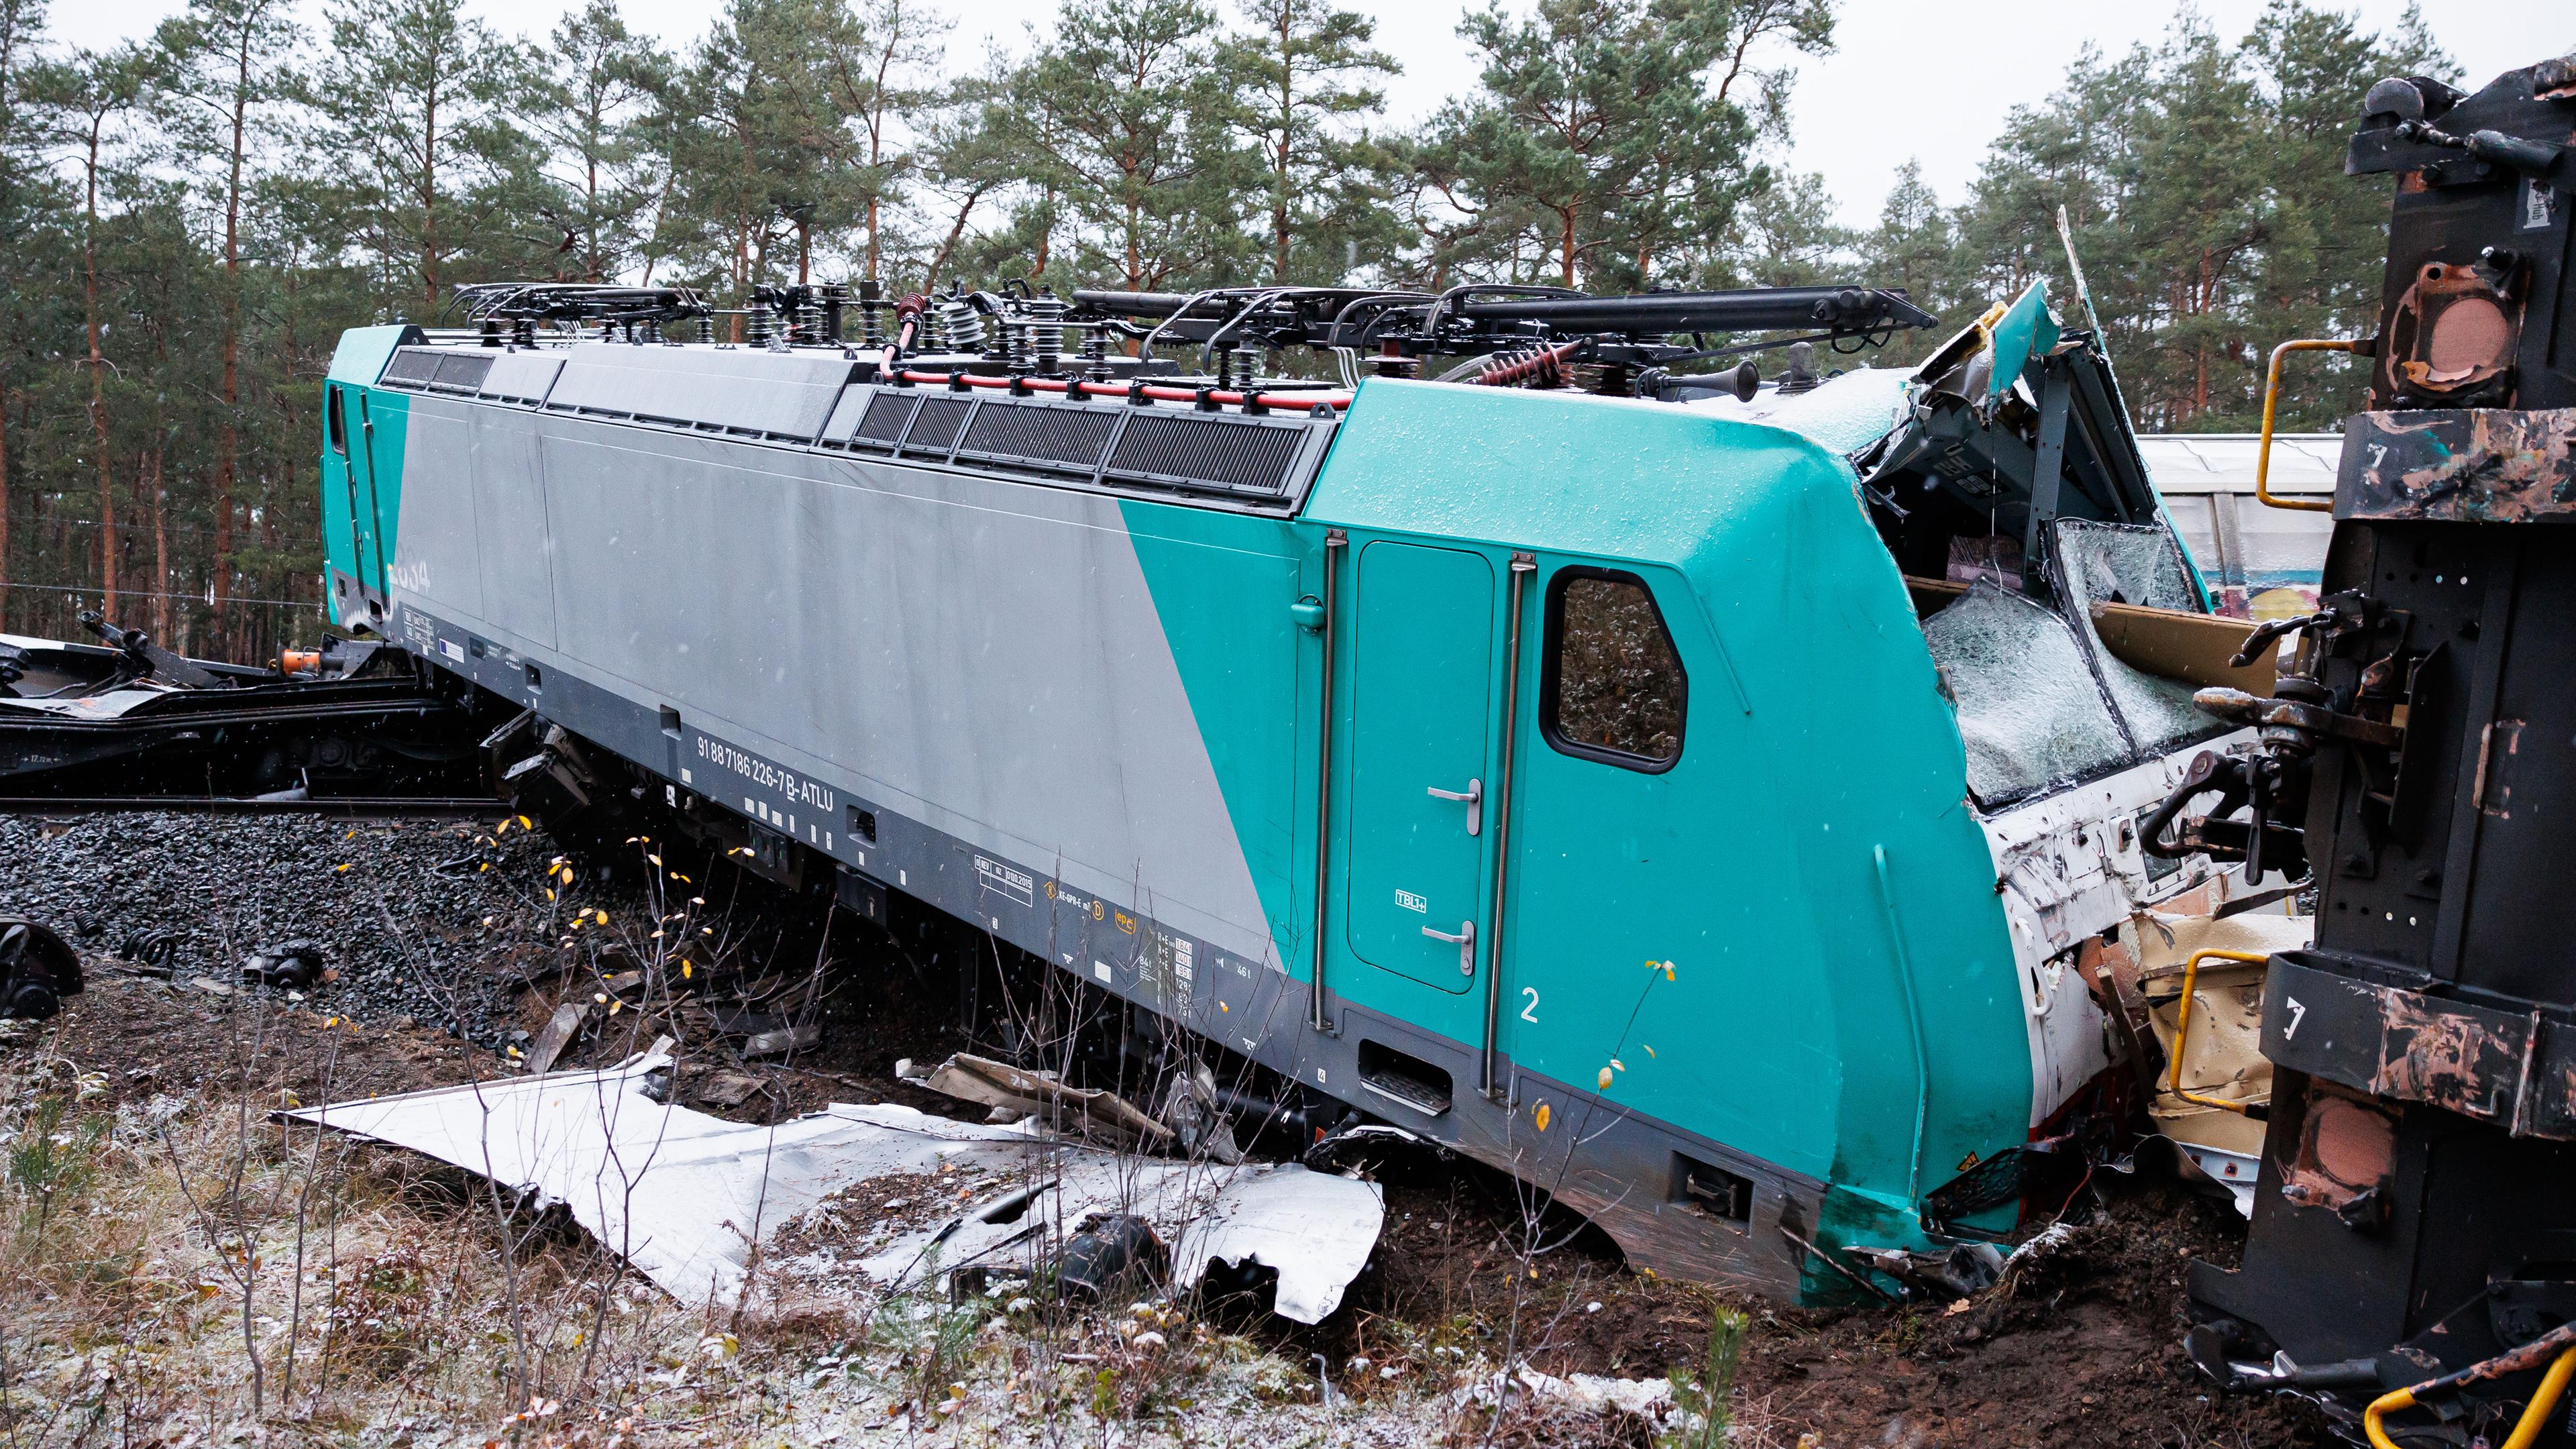 Leiferde: Ein entgleister Triebwagen vom aufgefahrenen Güterzug liegt beschädigt auf Schienen und Bahndamm. Zwei Güterzüge sind am 16.11.2022 im Landkreis Gifhorn kollidiert.